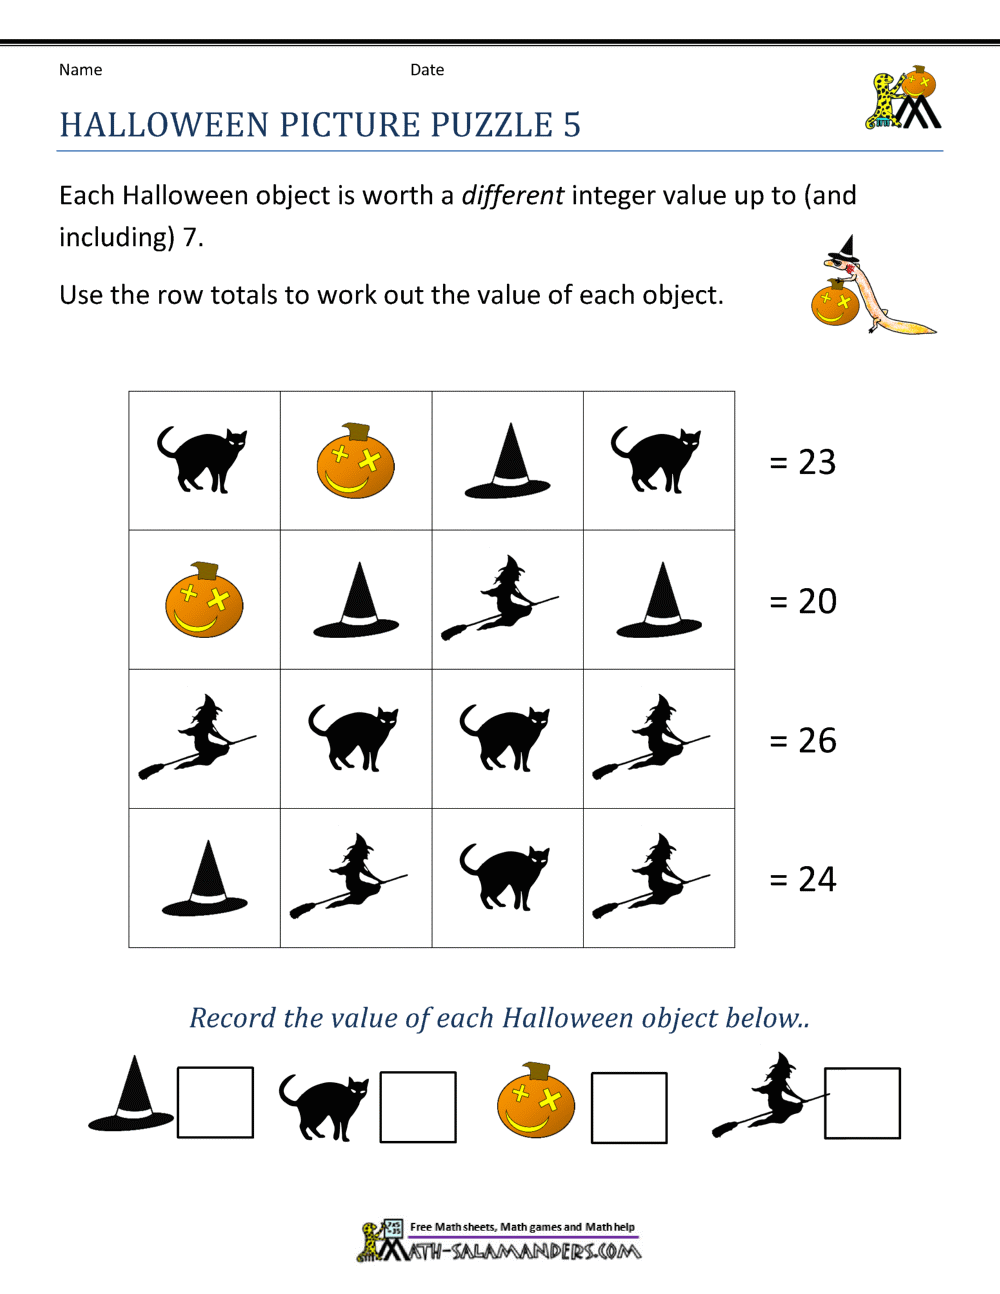 math-riddle-worksheets-pdf-math-riddle-worksheets-each-link-below